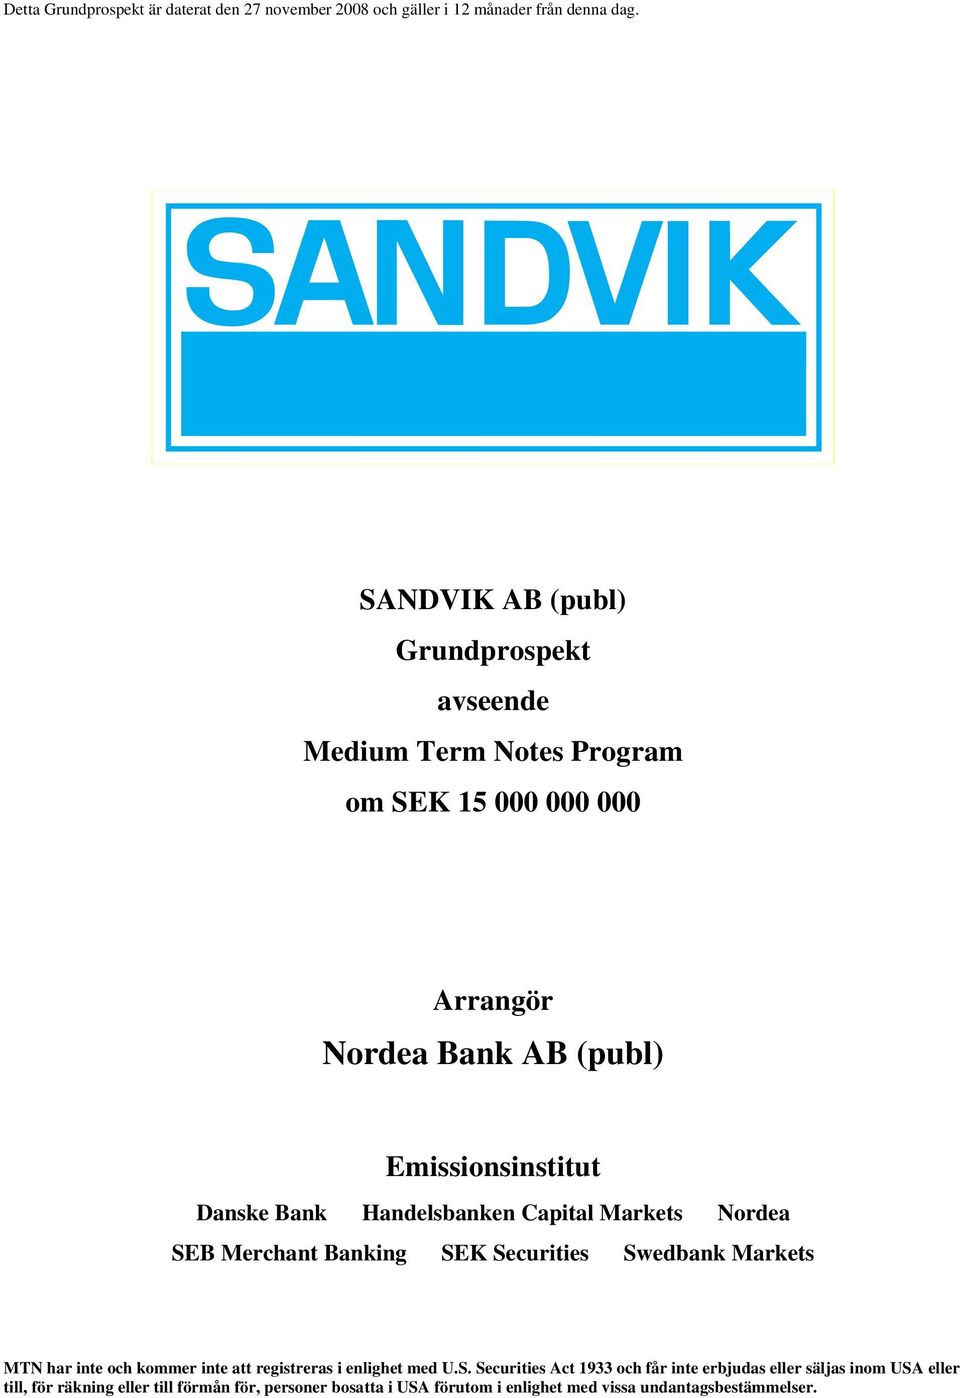 Bank Handelsbanken Capital Markets Nordea SEB Merchant Banking SEK Securities Swedbank Markets MTN har inte och kommer inte att registreras i